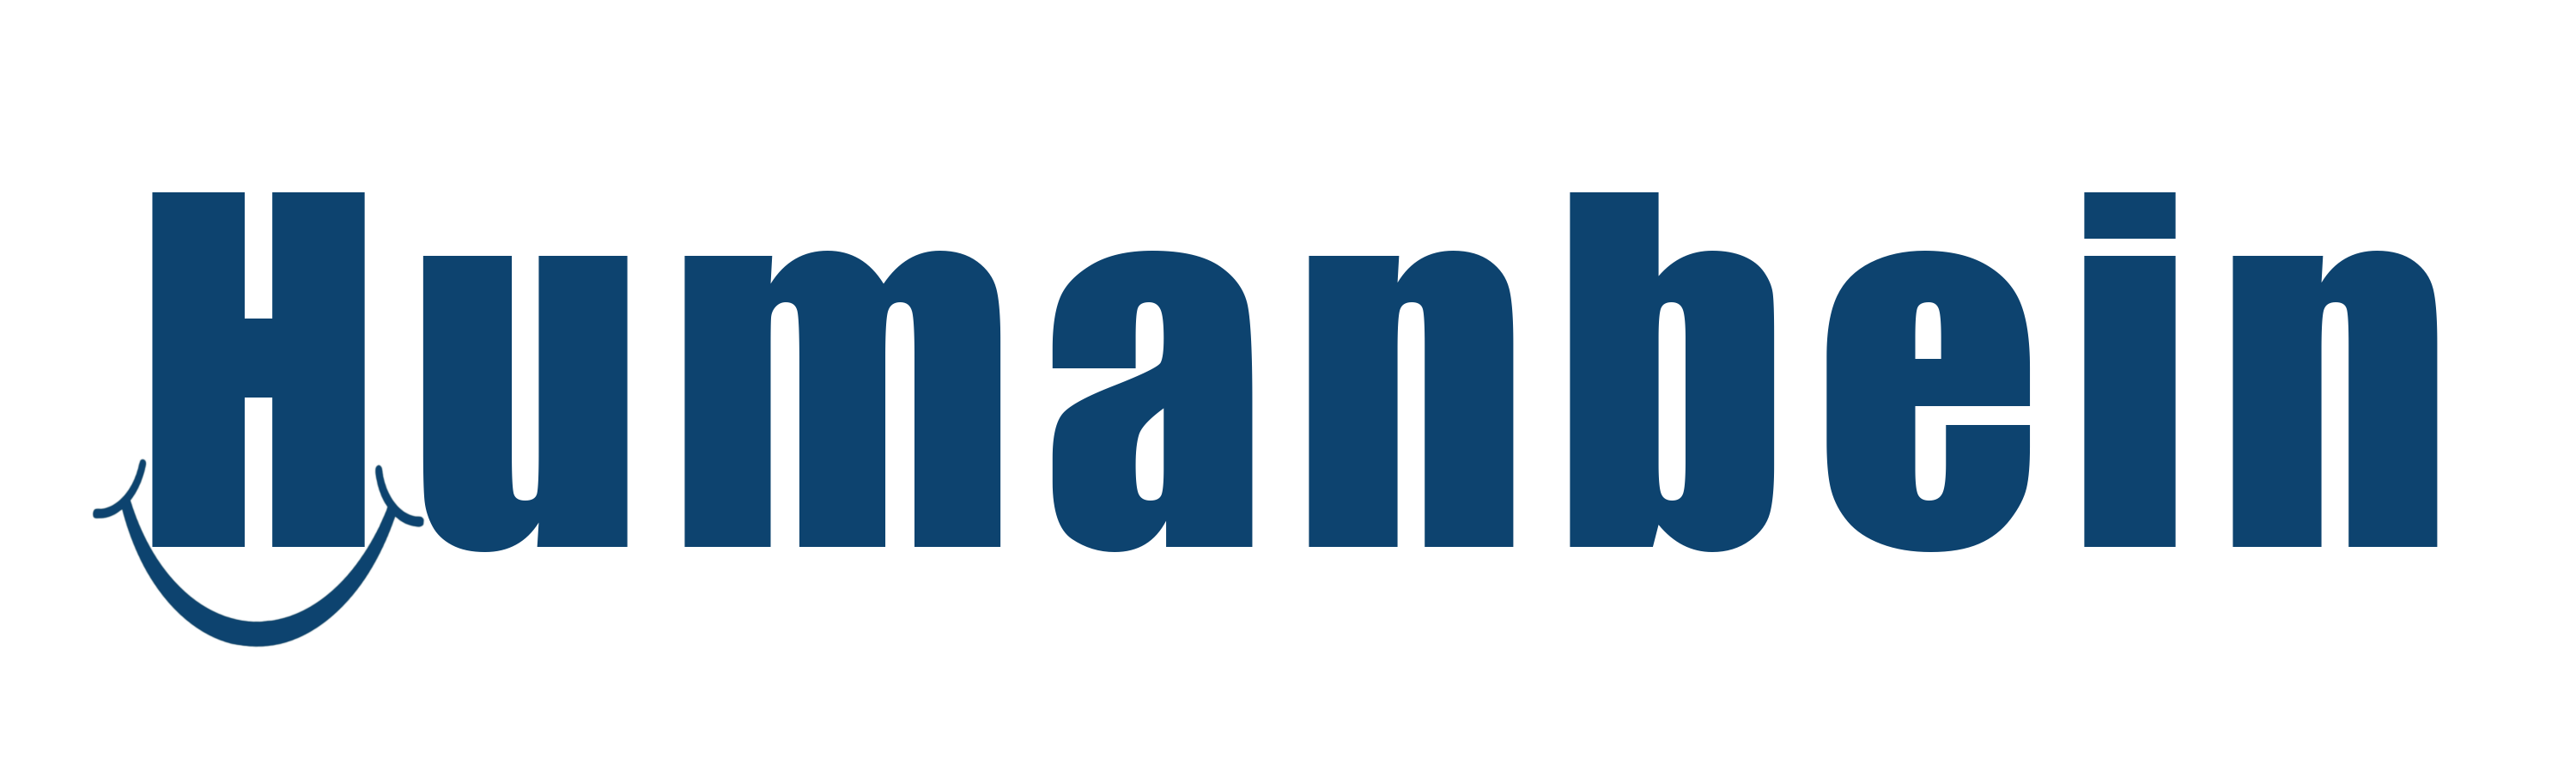 Humanbein logo